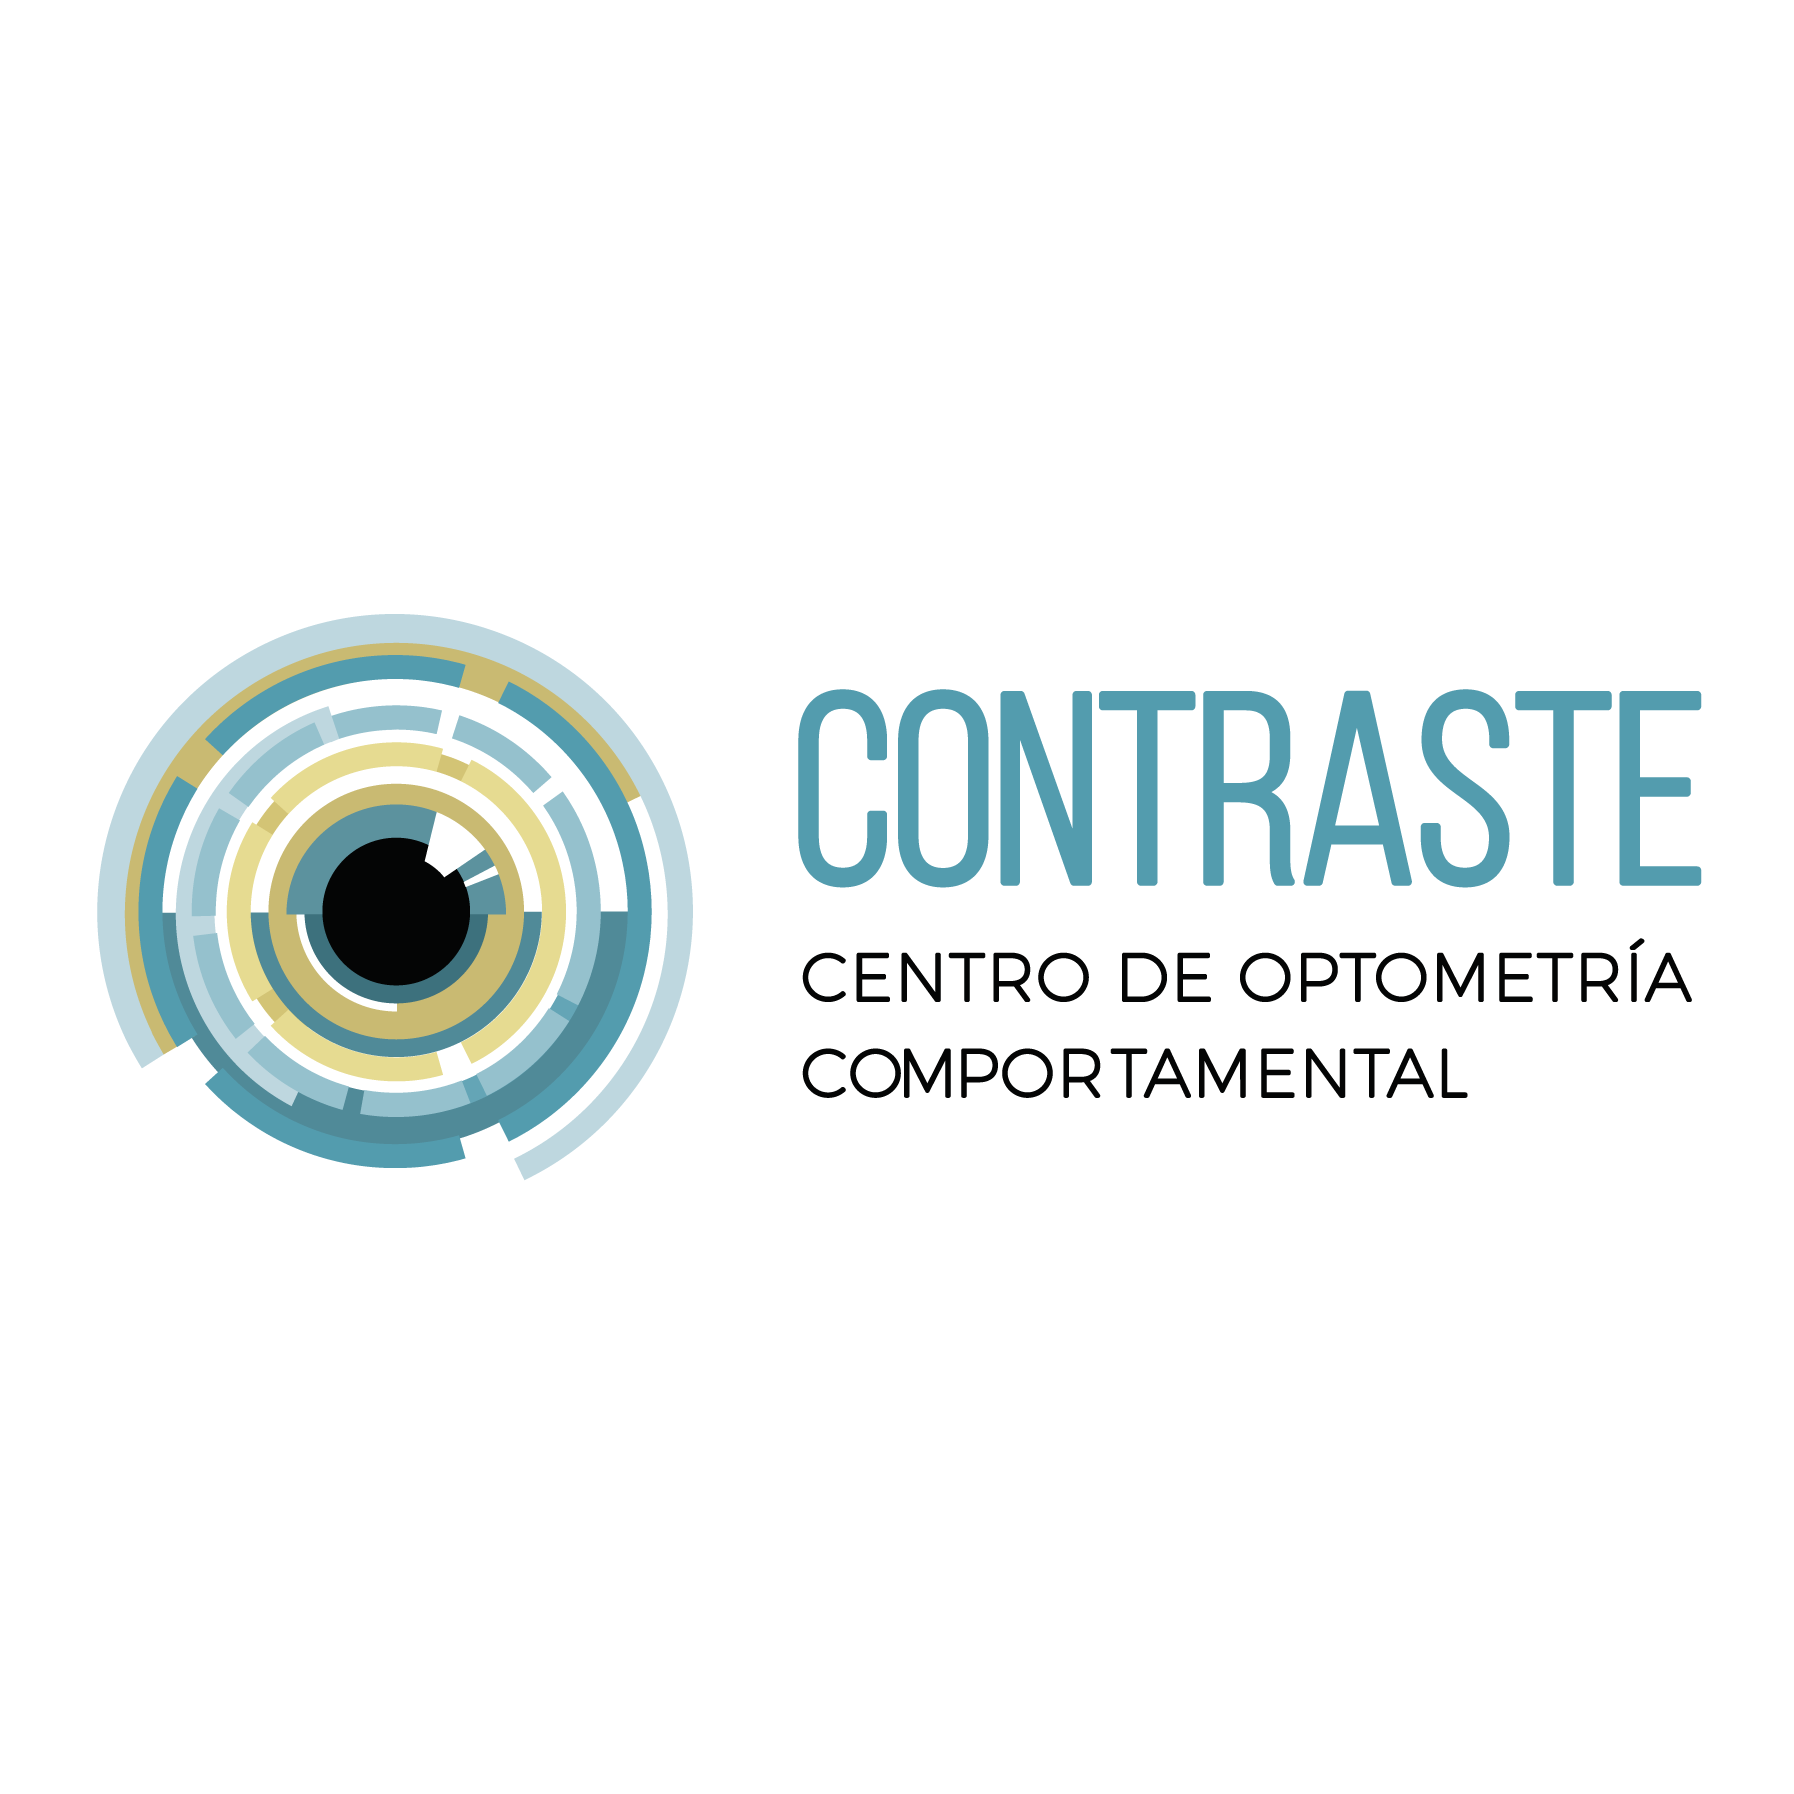 CONTRASTE Centro de optometría comportamental Sevilla